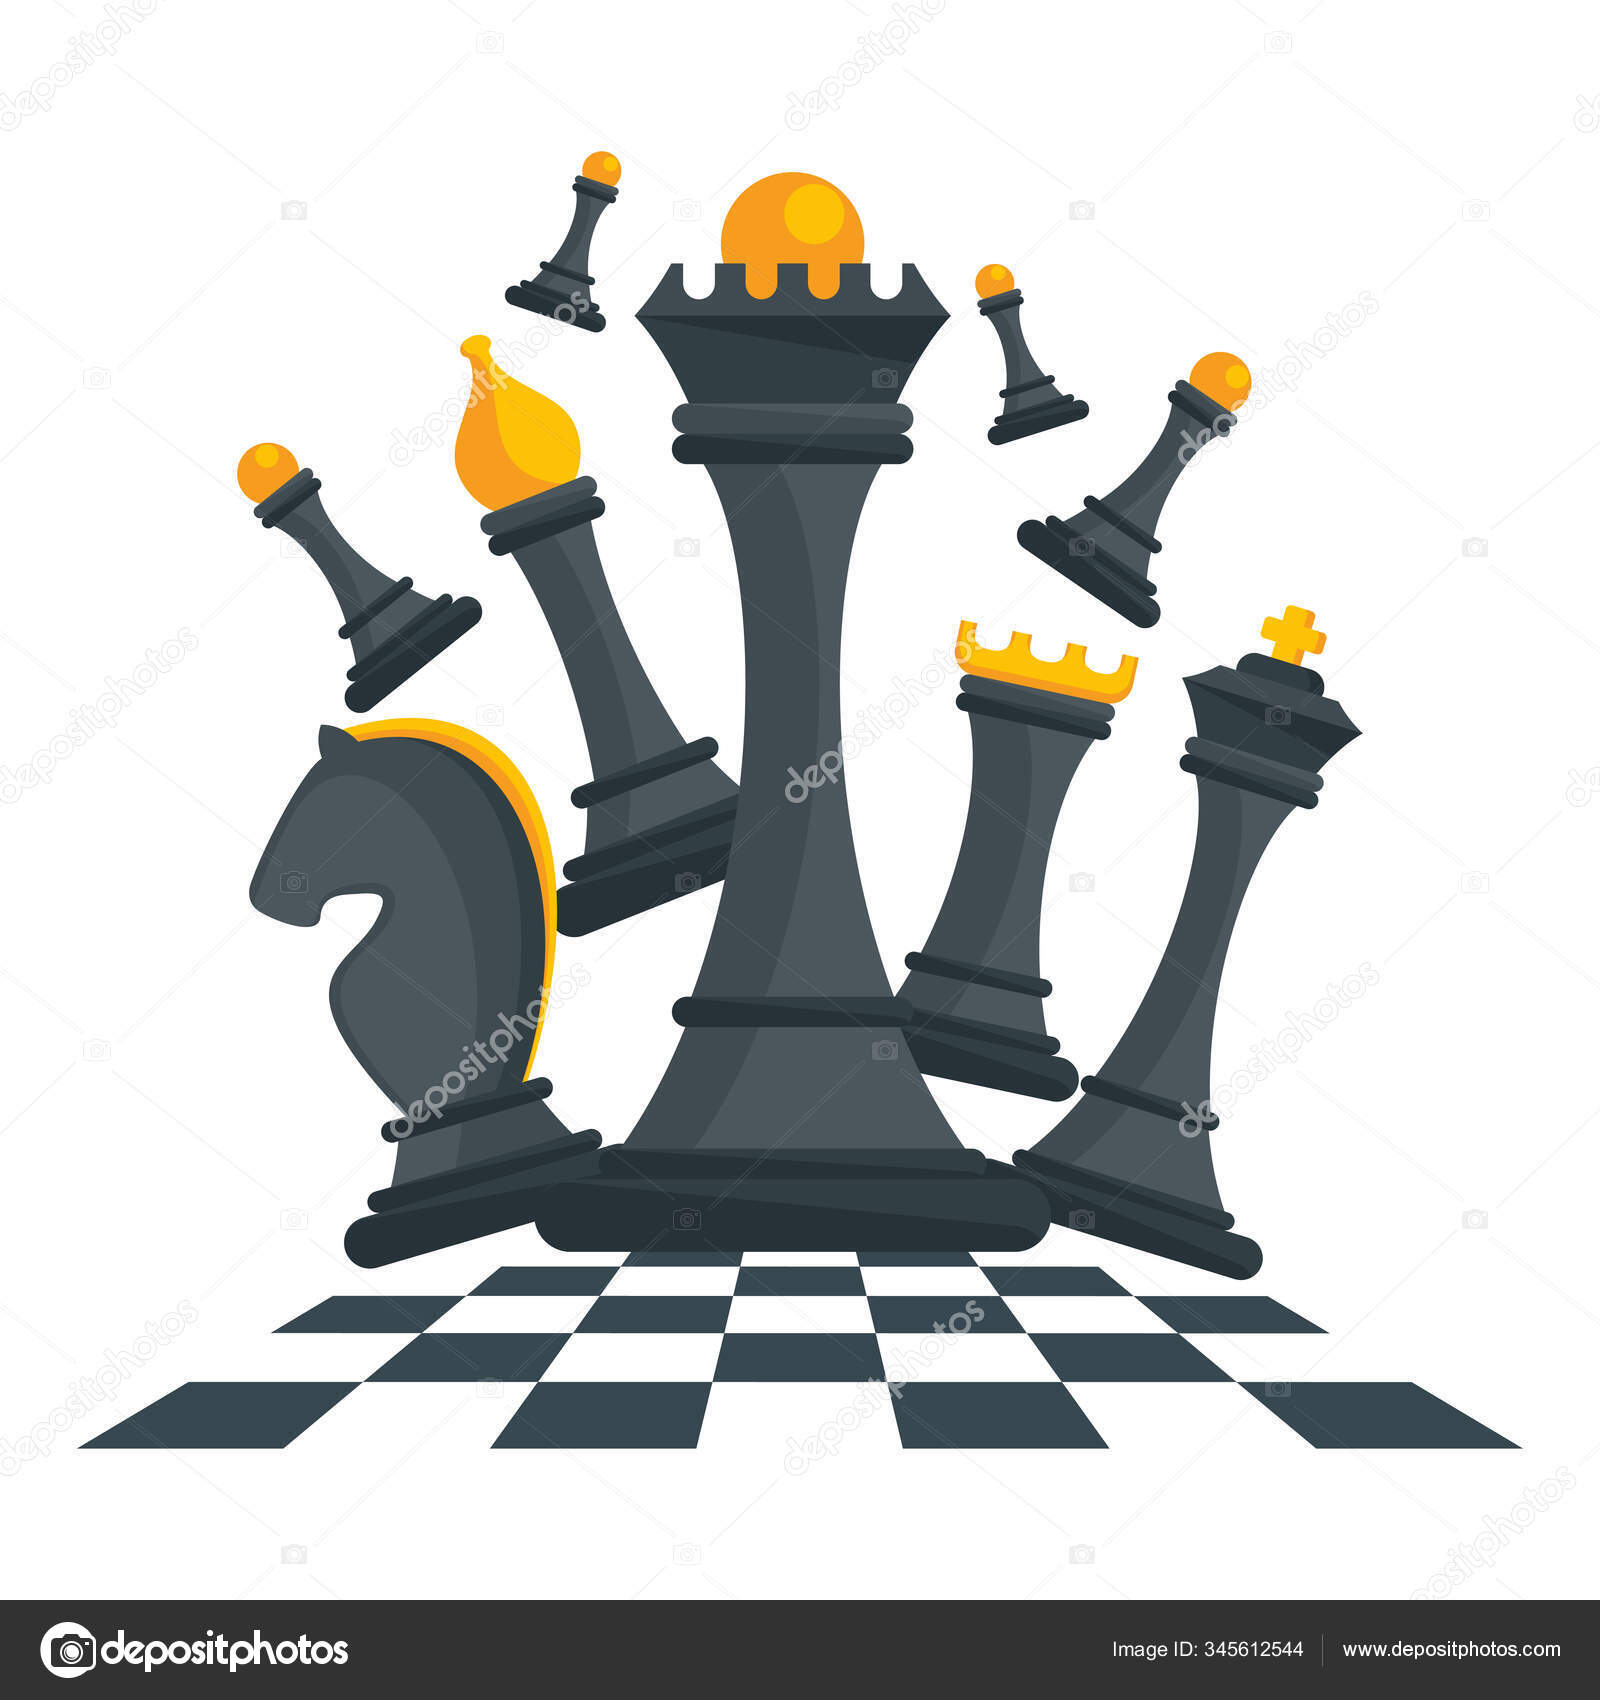 Desenho de tabuleiro de xadrez e peças de xadrez pretas em um fundo branco